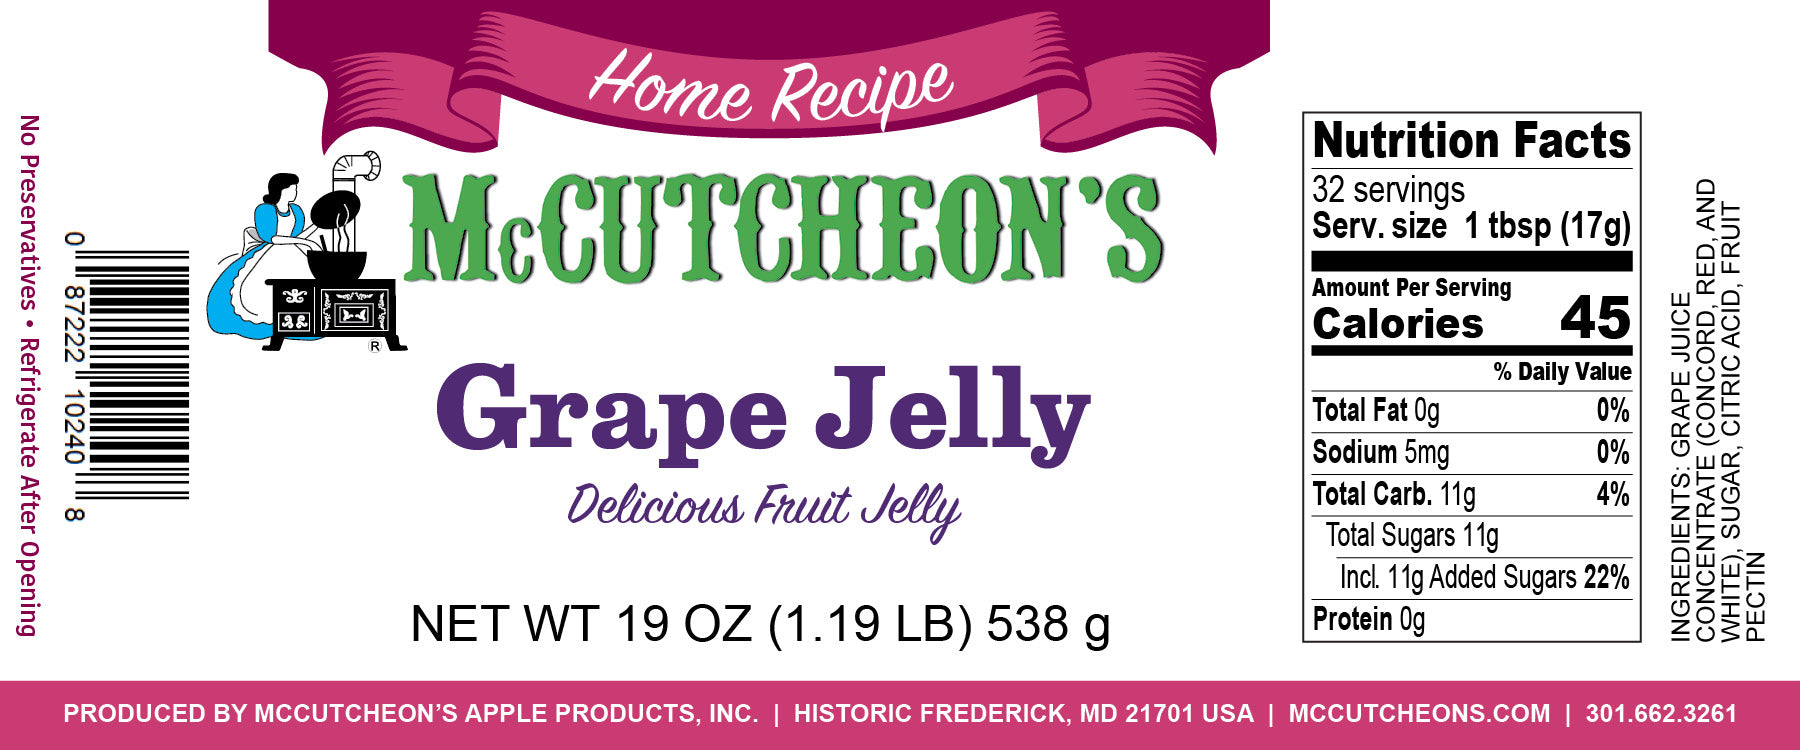 nutrition label for McCutcheon's grape jelly